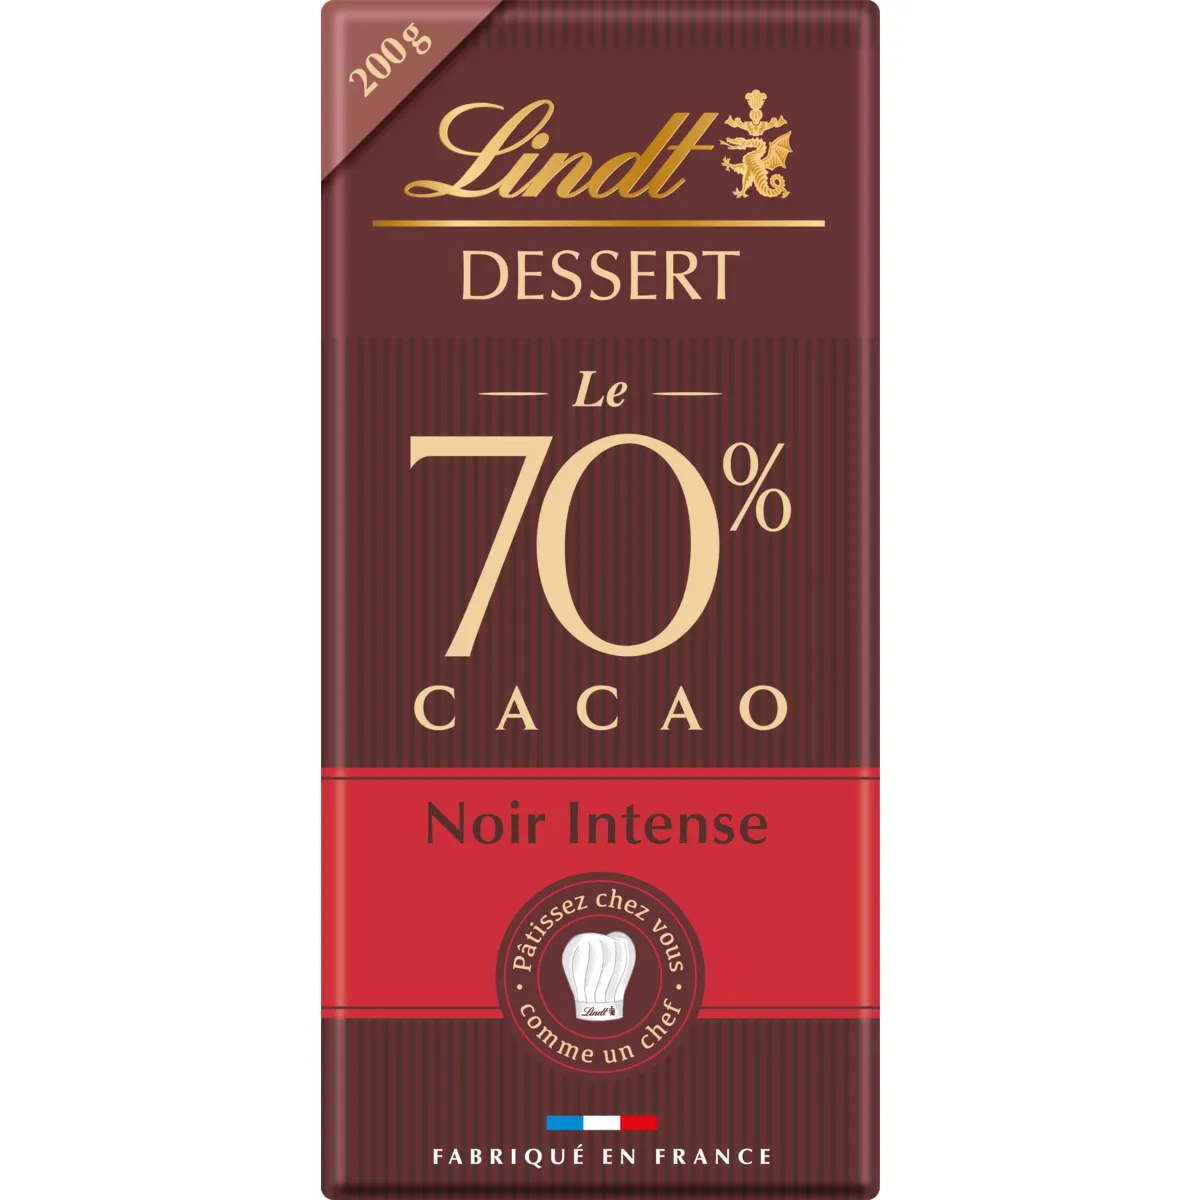 tablettes de chocolat 70% cacao intense lindt dessert